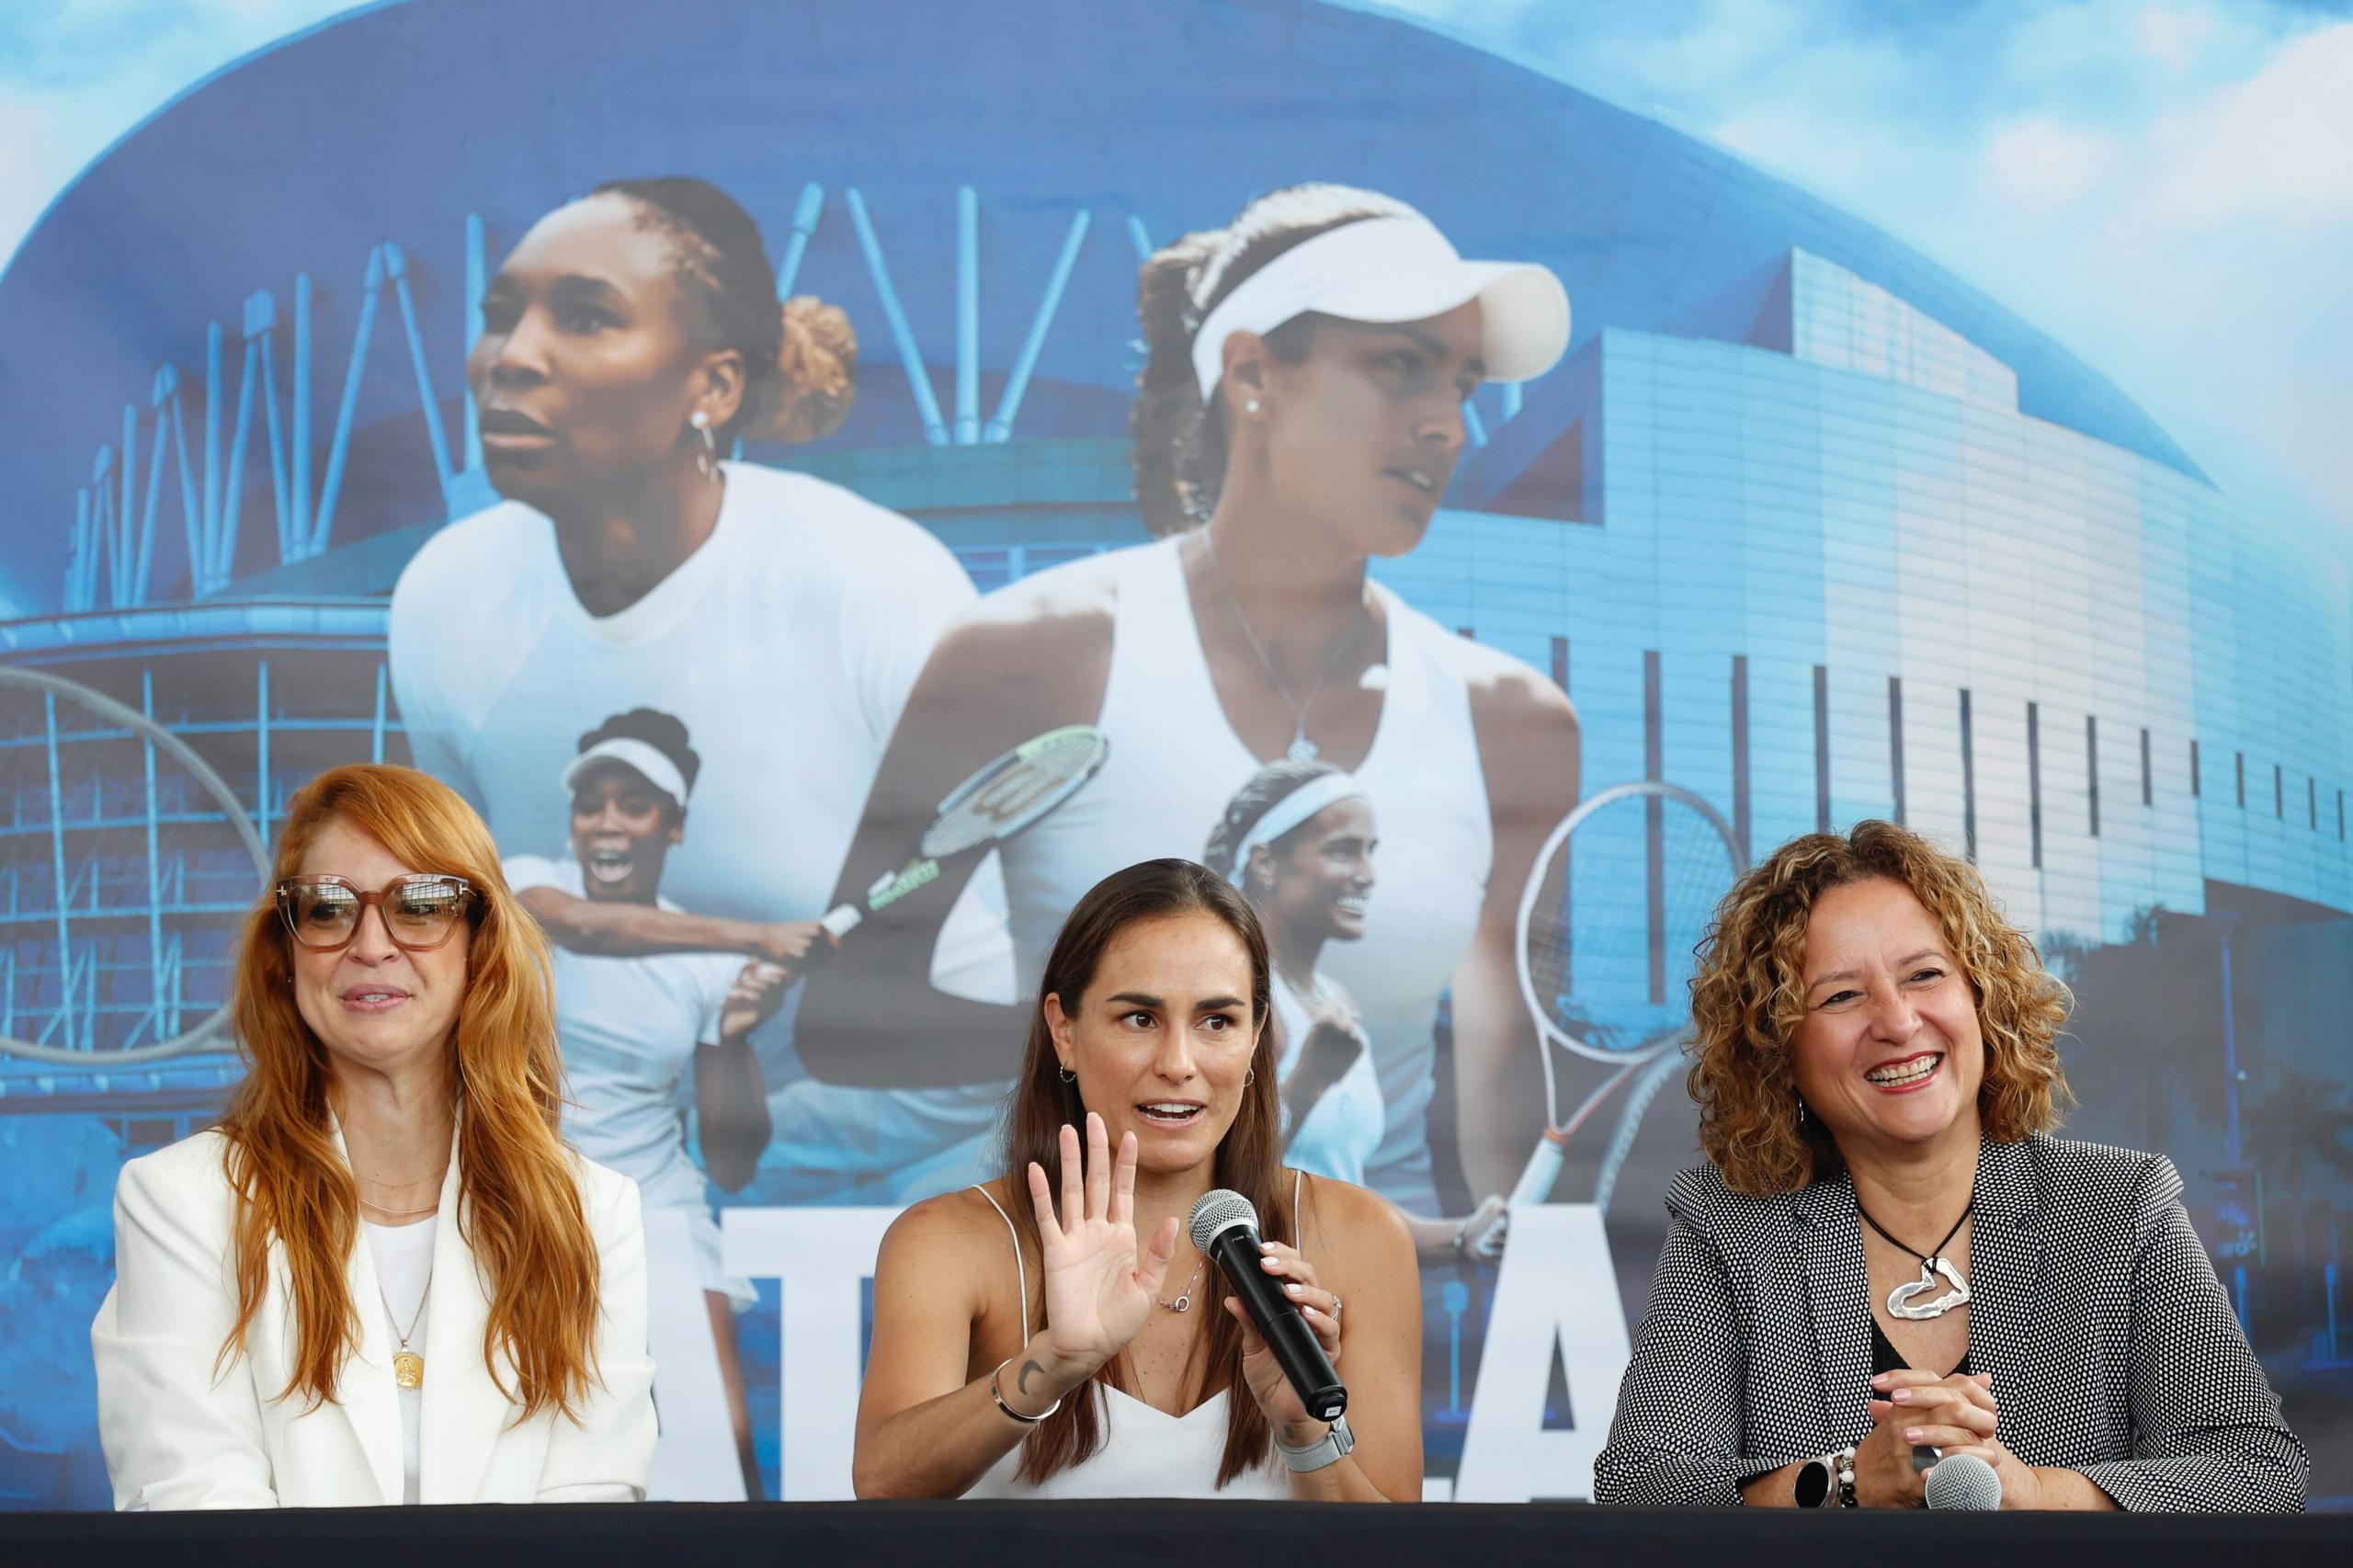 La tenista boricua, Mónica Puig (al centro), ofrece detalles de lo que será el partido de exhibición frente a Venus Williams.